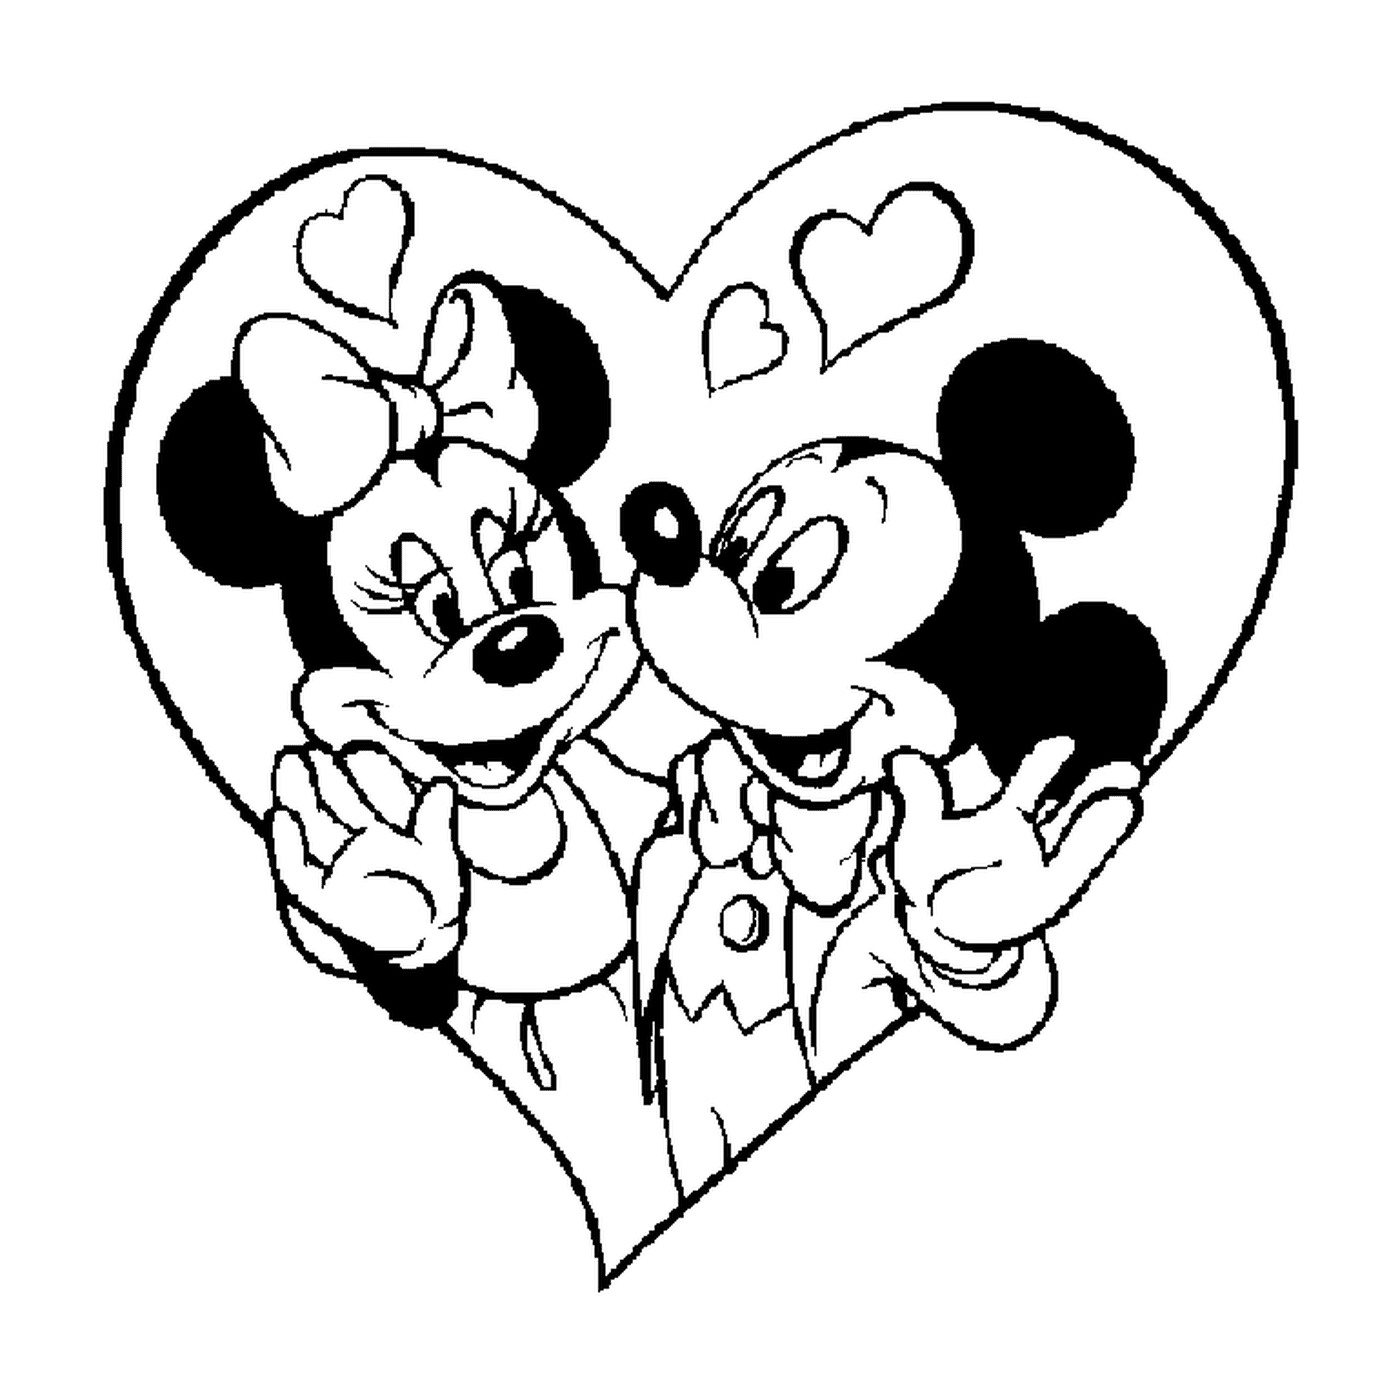  Topolino e Minnie Mouse in un cuore 